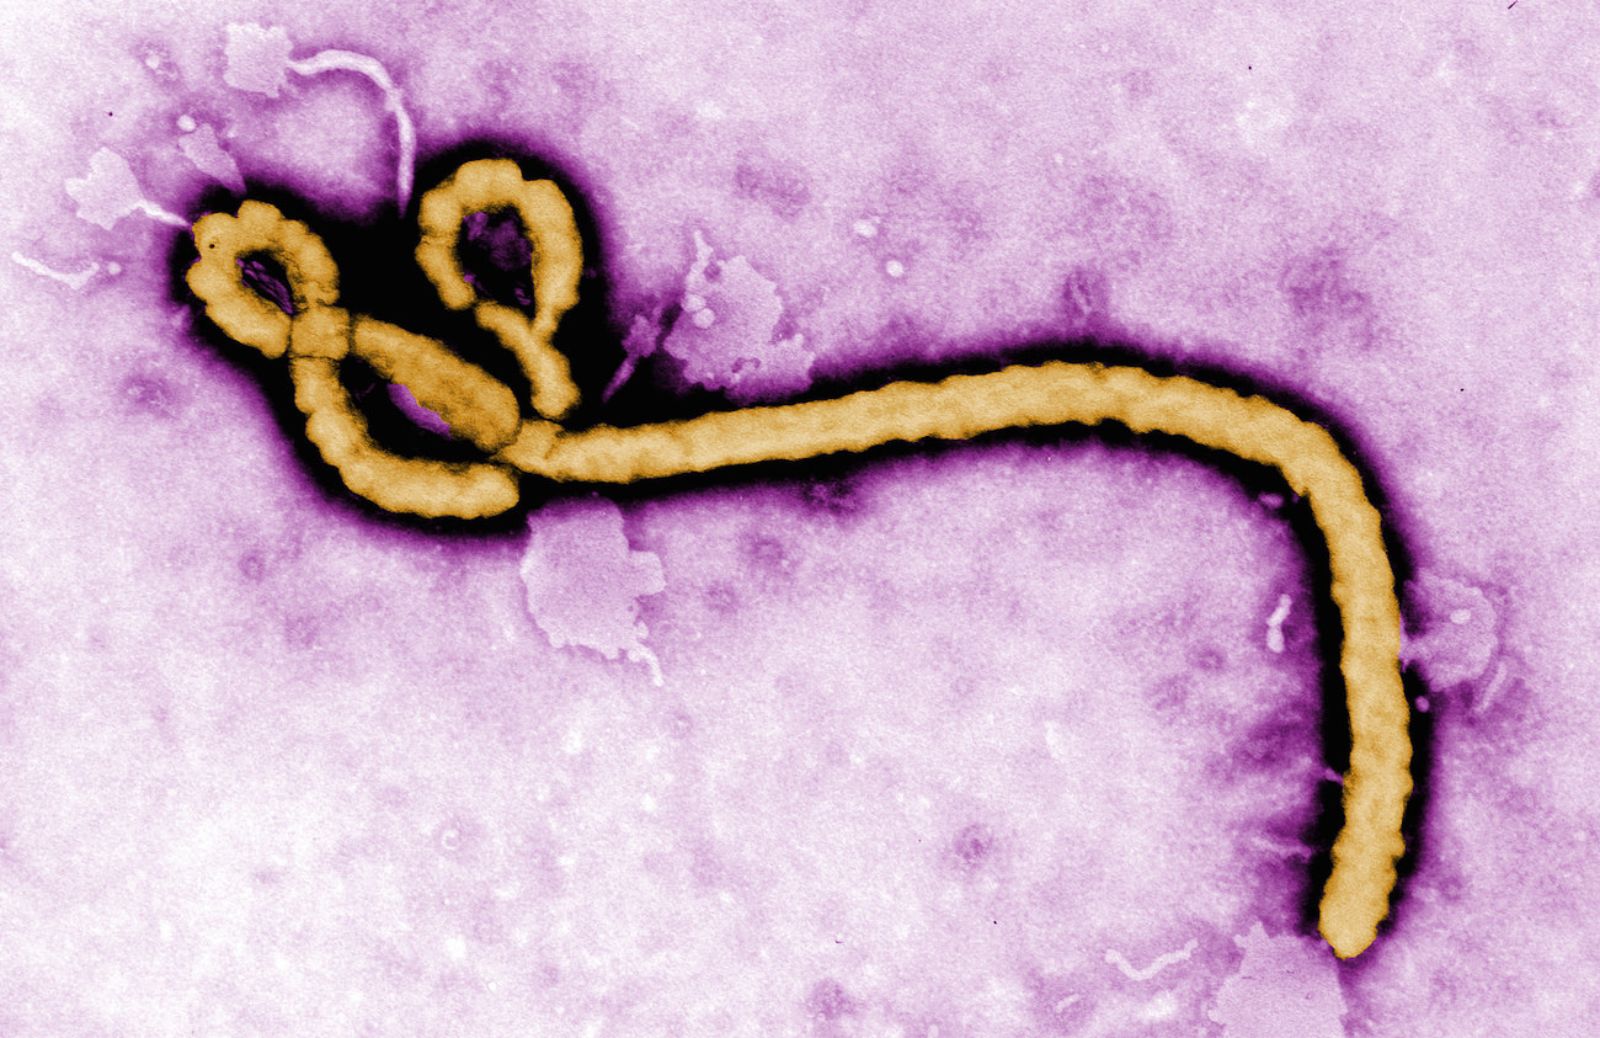 Come si trasmette il virus Ebola e qual è il rischio di contagio